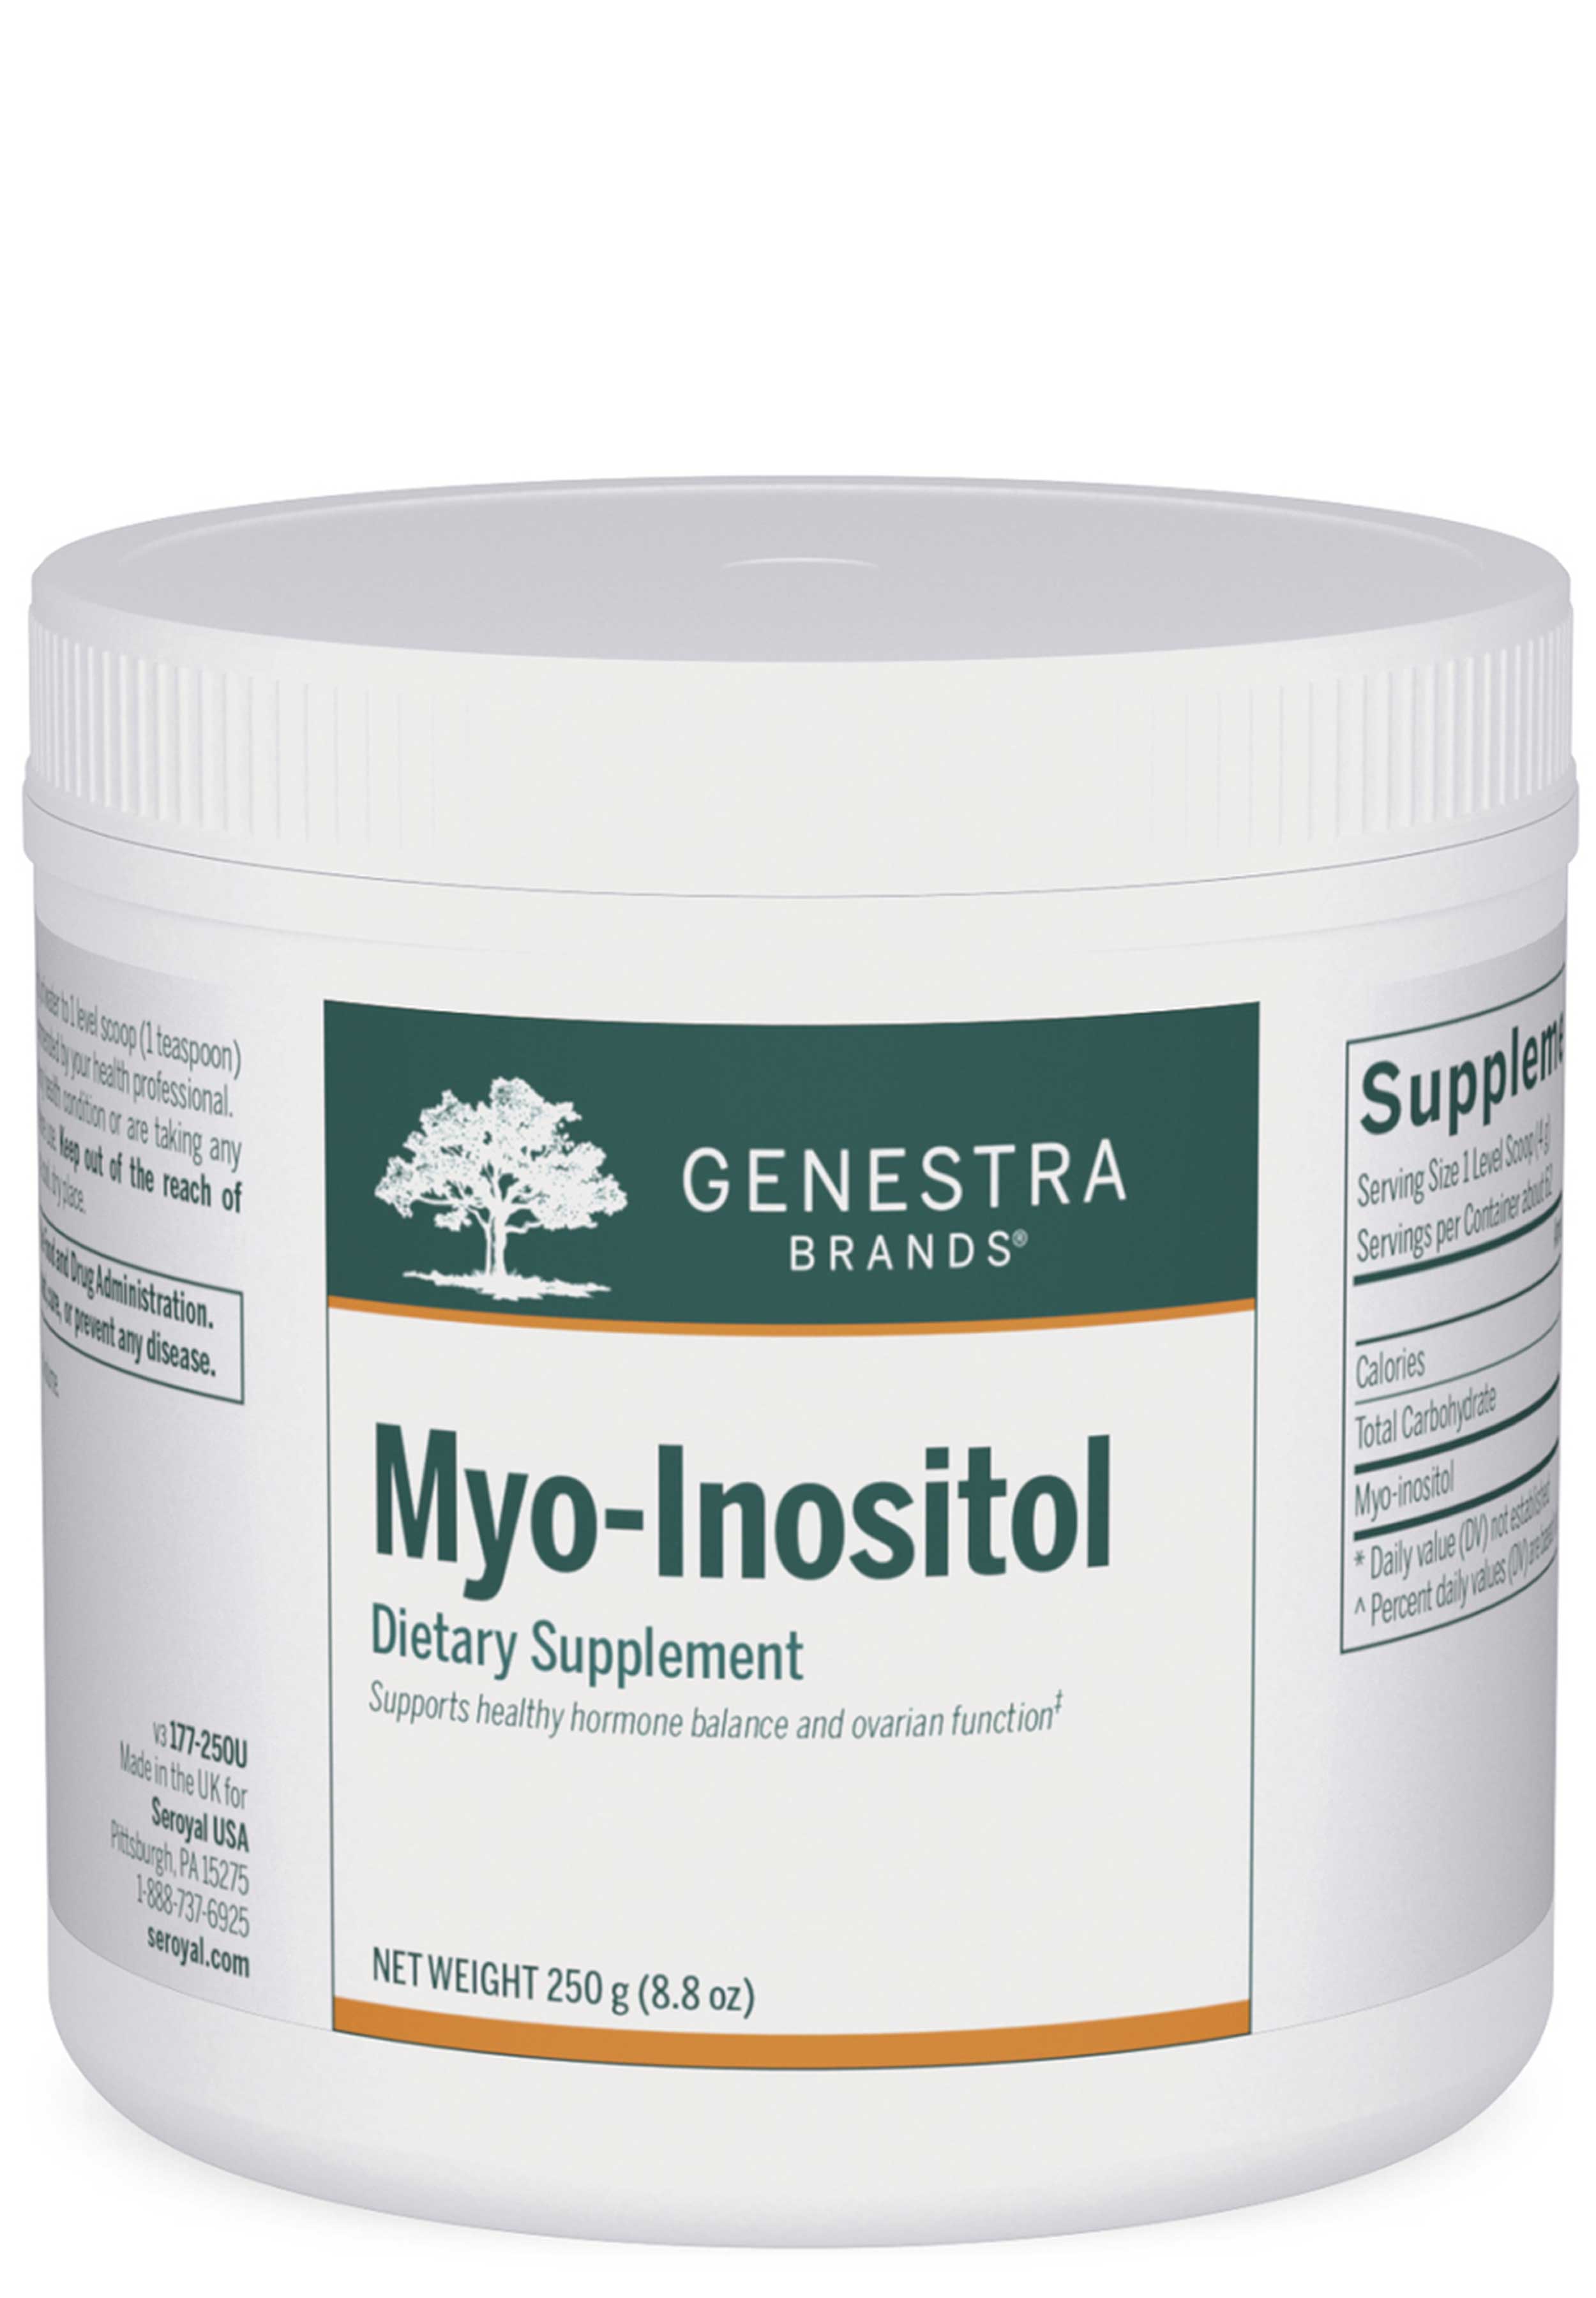 Genestra Brands Myo-Inositol